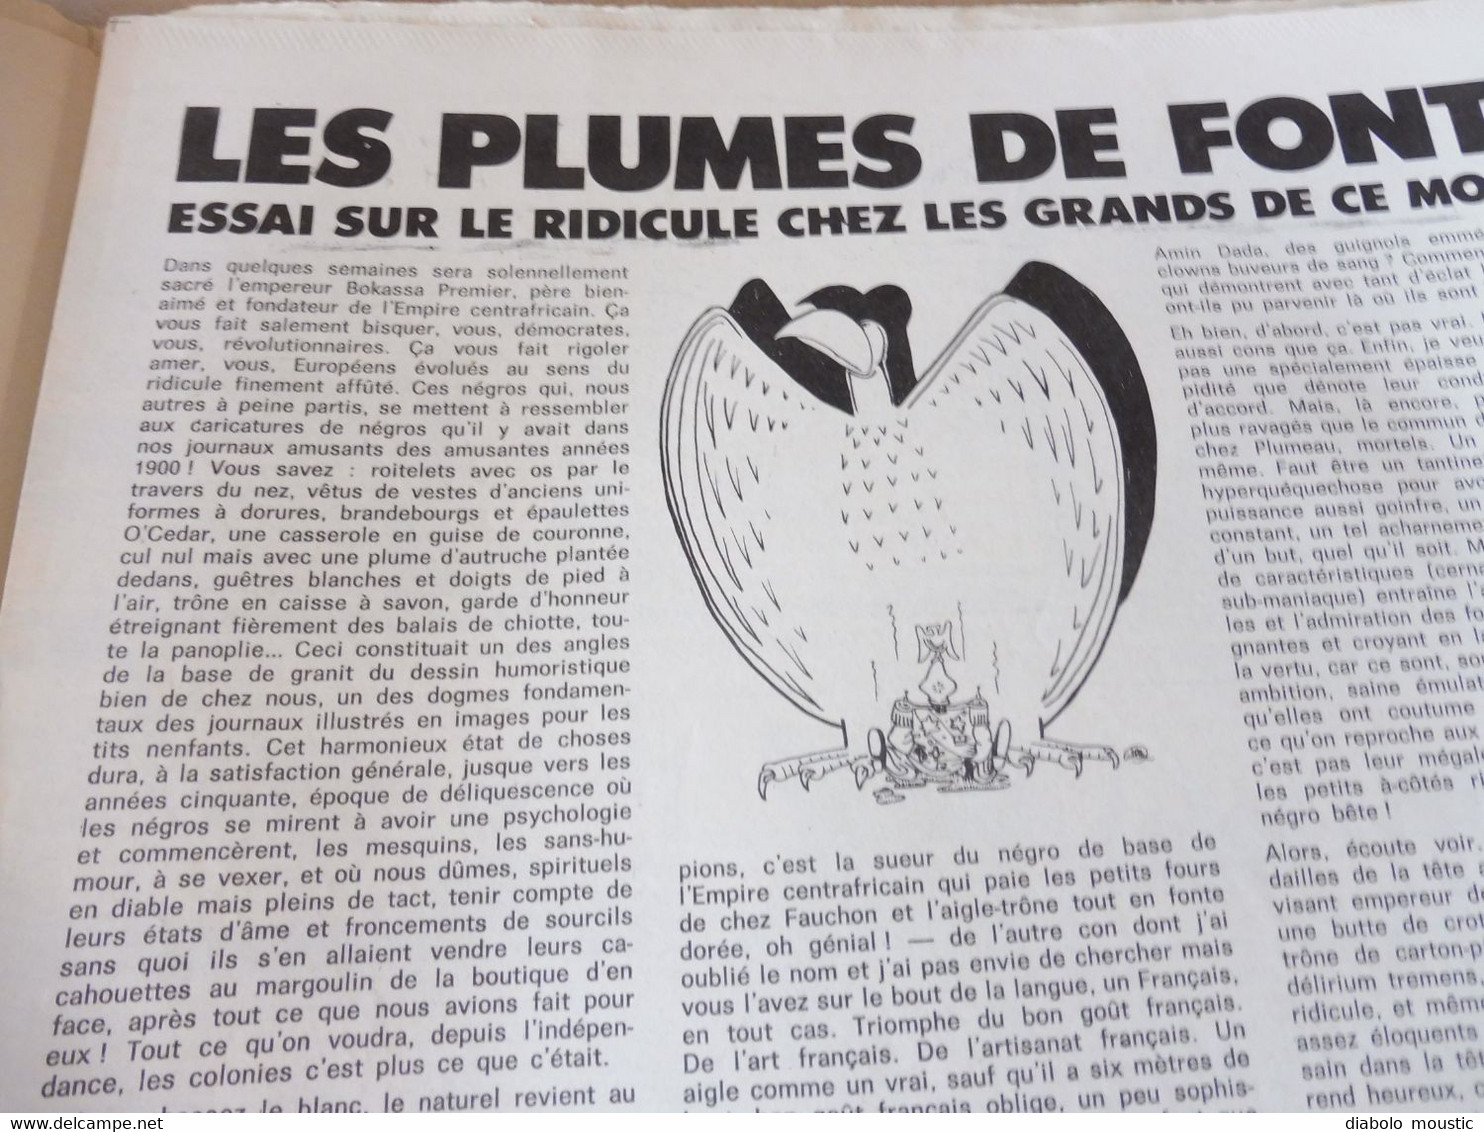 1978 LA NOUVELLE POLITIQUE ....La réussite à portée des cons ...........Etc  (Charlie Hebdo)